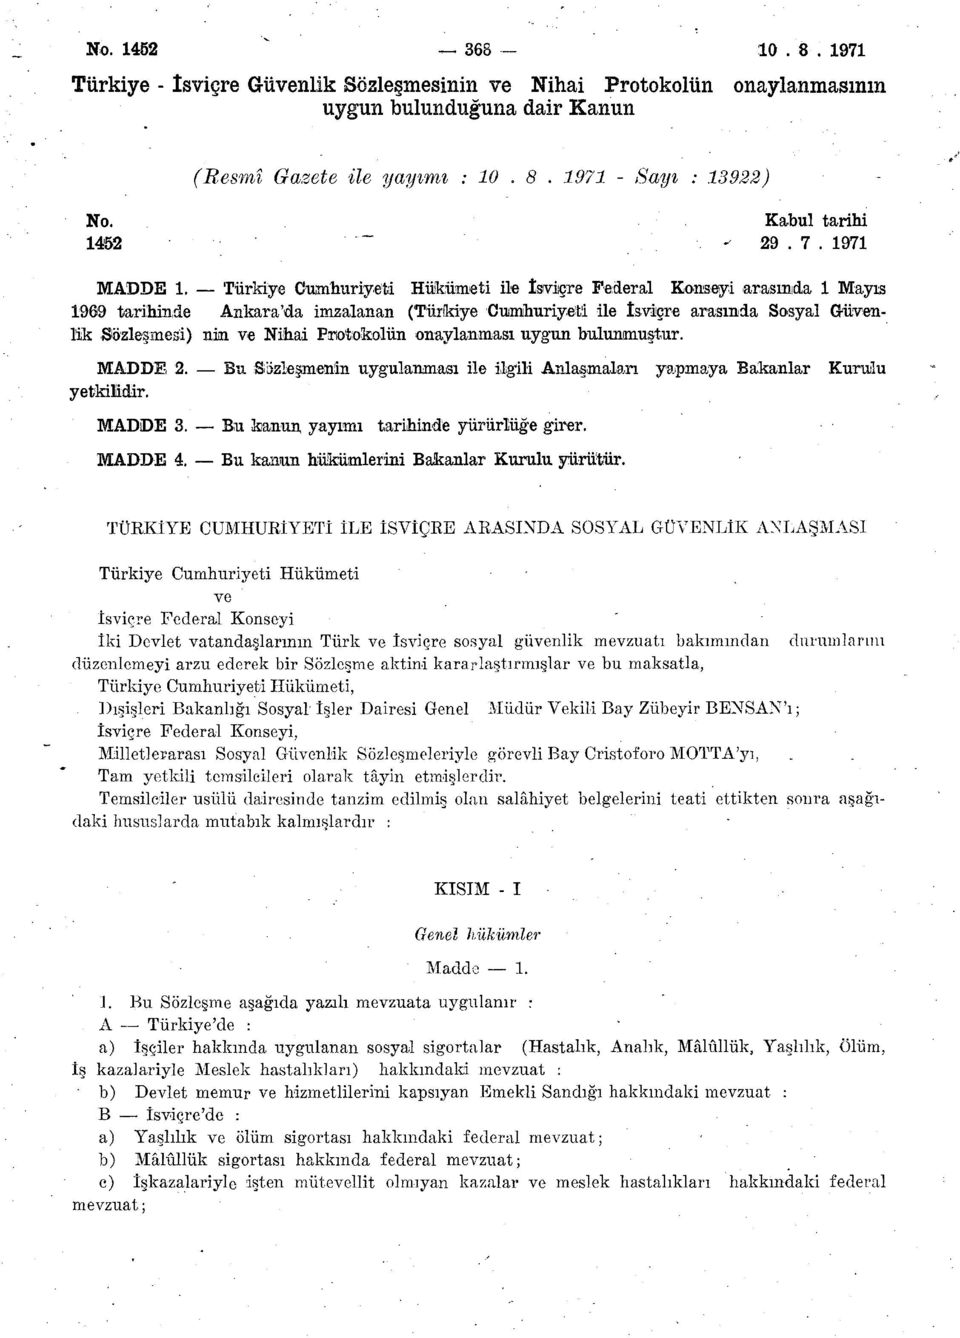 Türkiye Cumhuriyeti Hükümeti ile İsviçre Federal Konseyi arasımda 1 Mayıs 1969 tarihinde Ankara'da imzalanan (Türkiye Cumhuriyeti ile İsviçre arasında Sosyal Güvenlik Sözleşmesi) nin ve Nihai